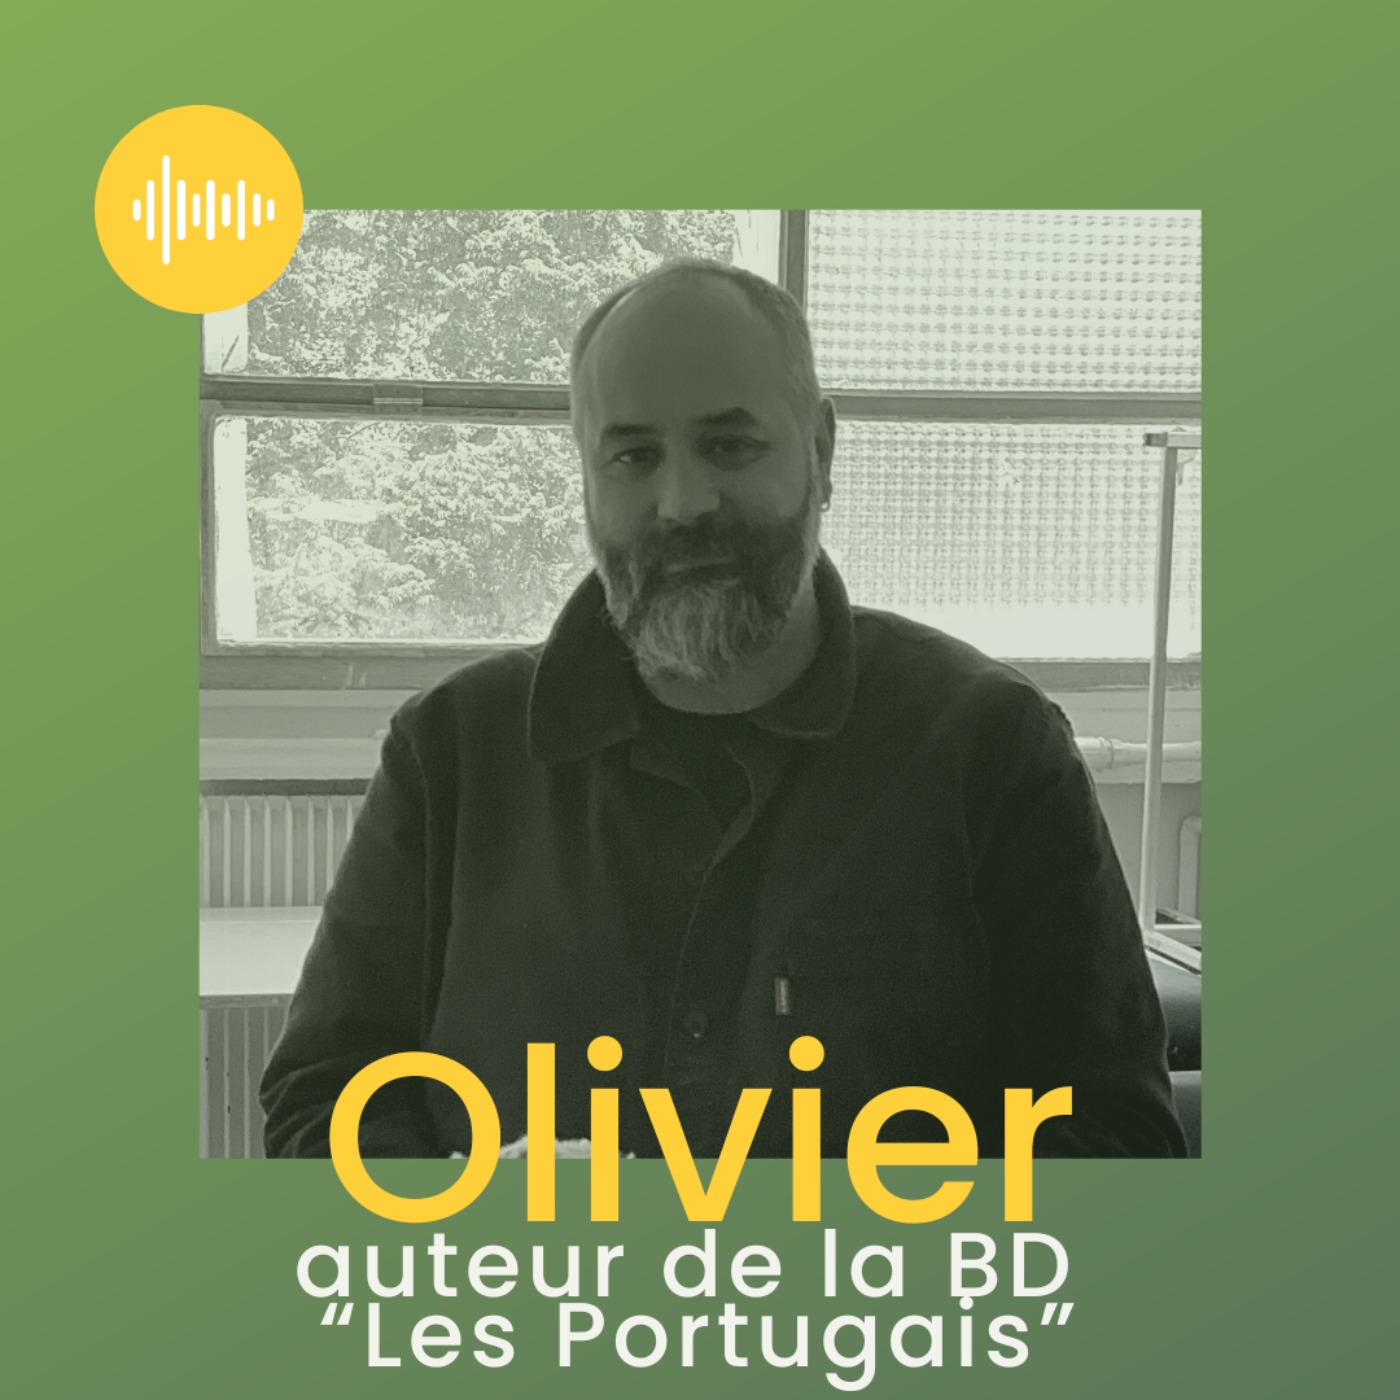 Olivier, auteur de la BD "Les Portugais"